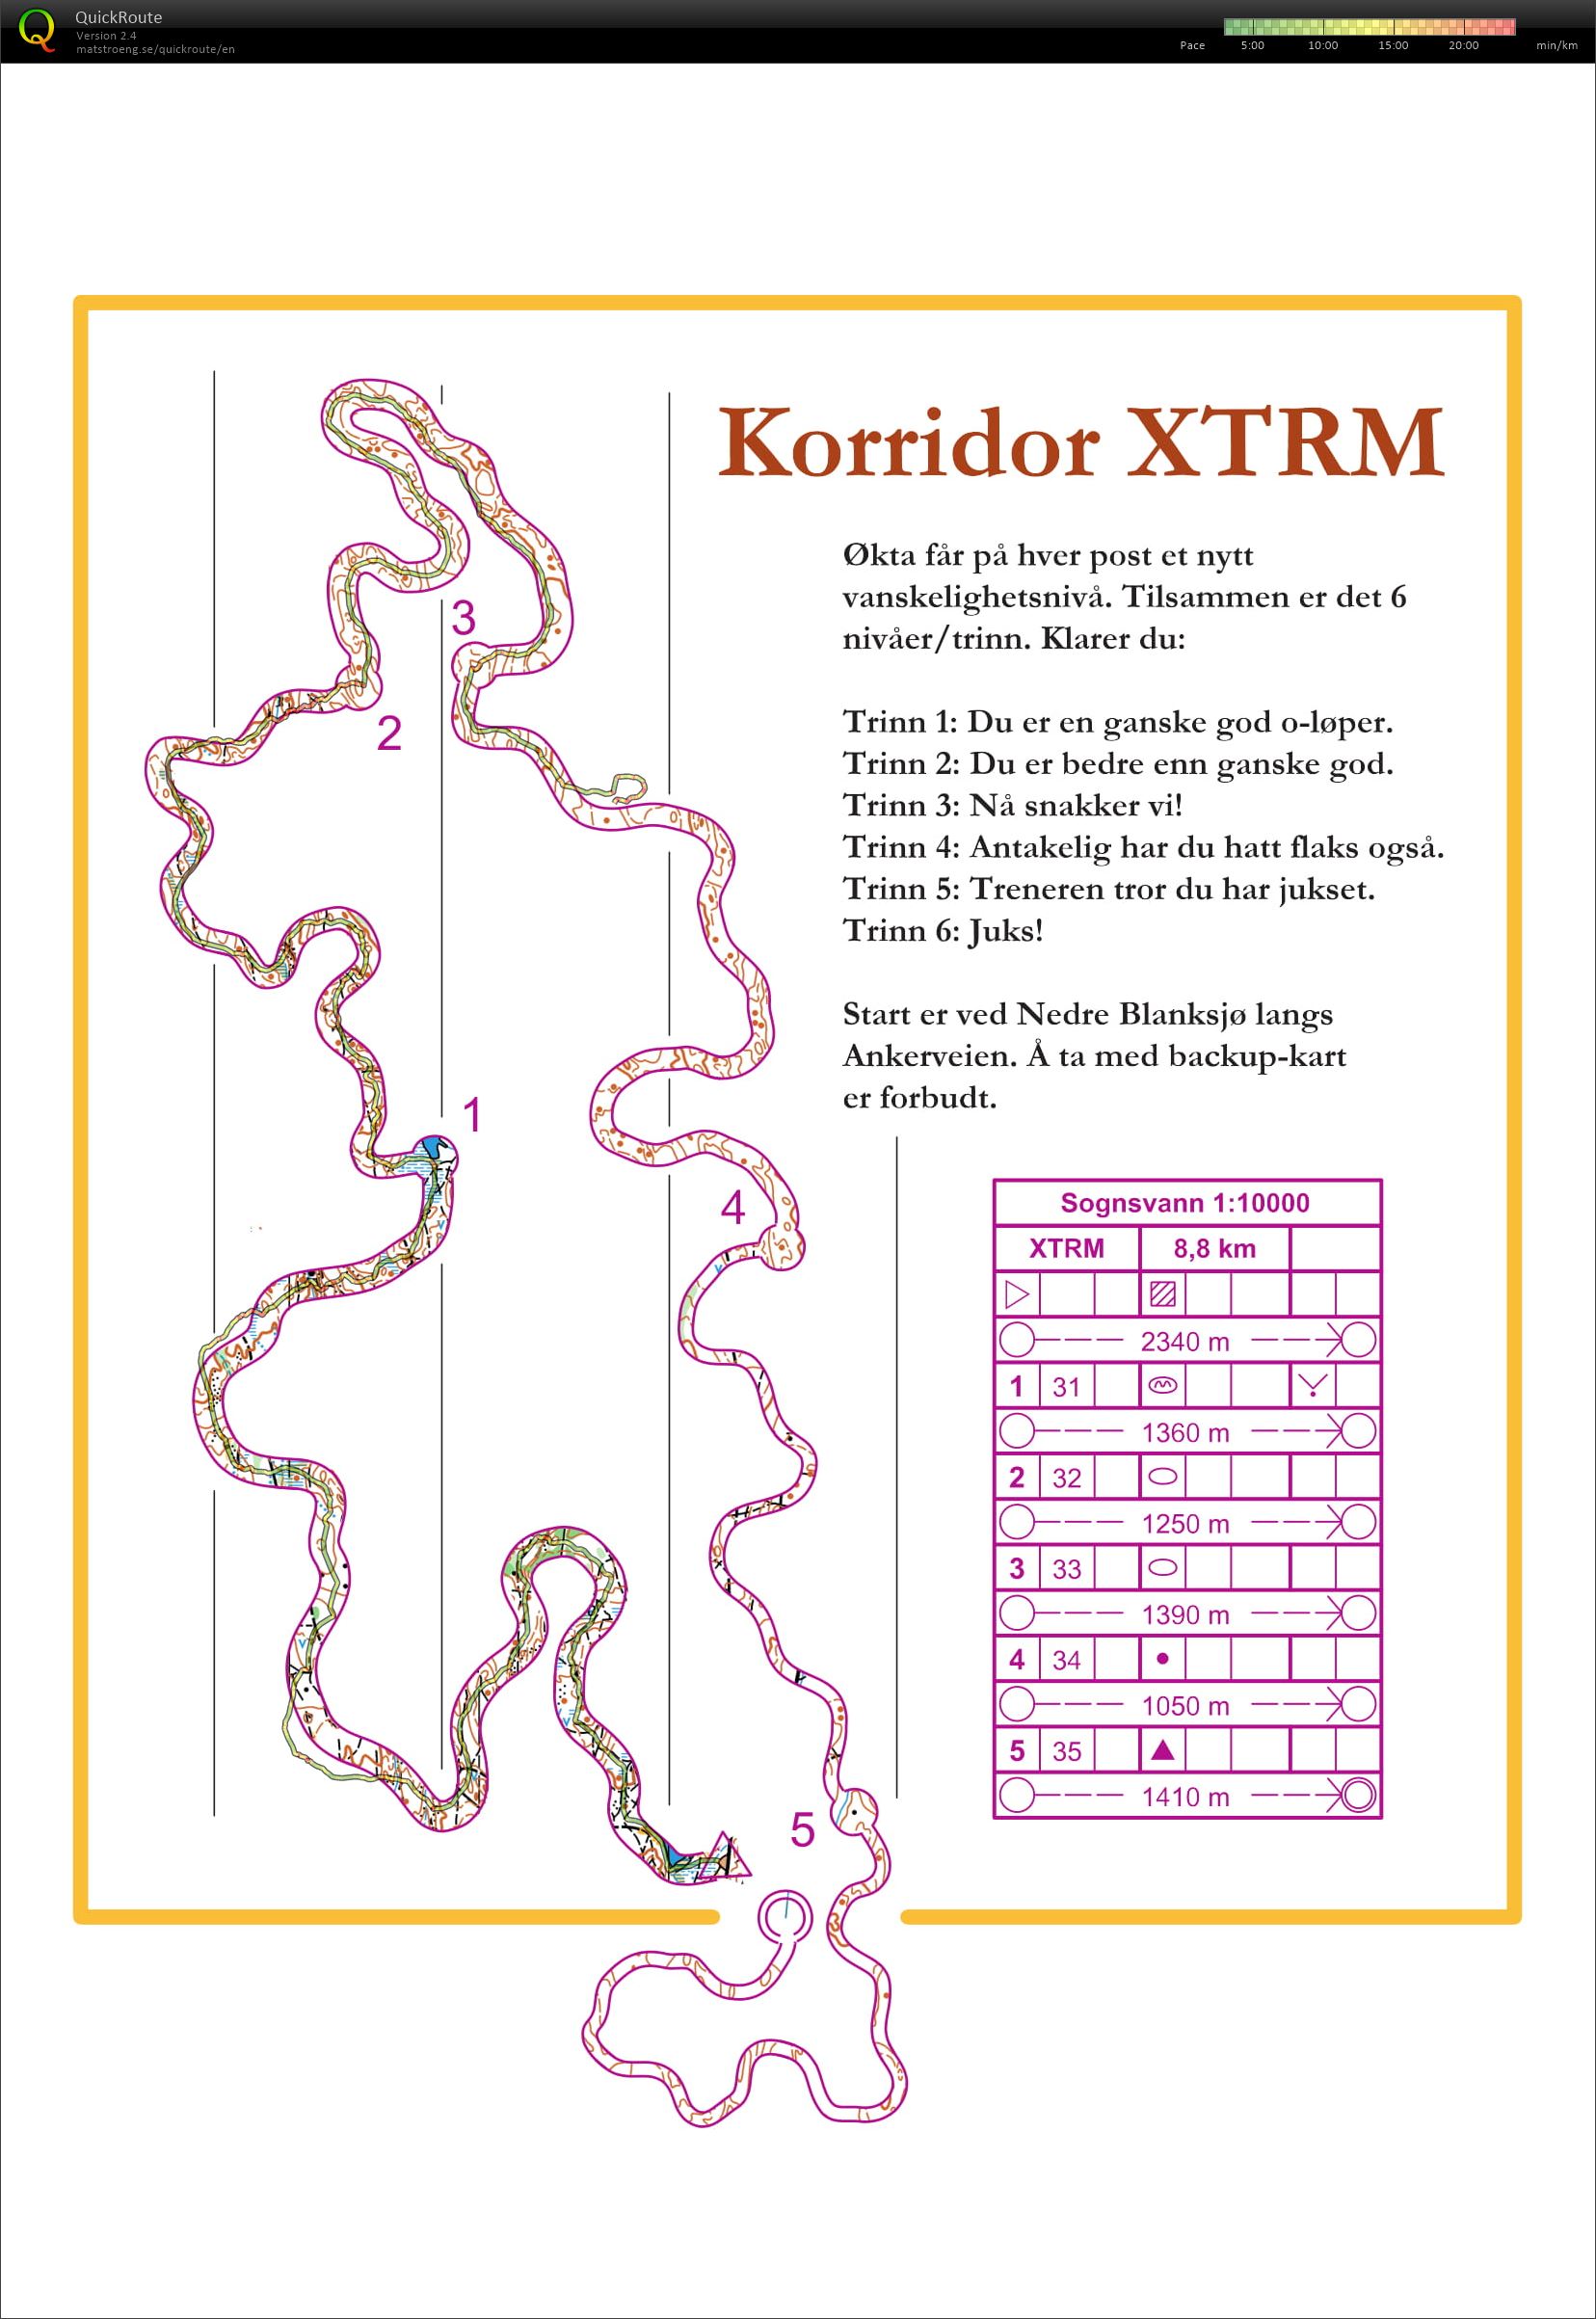 XTRM coridor (07-06-2018)